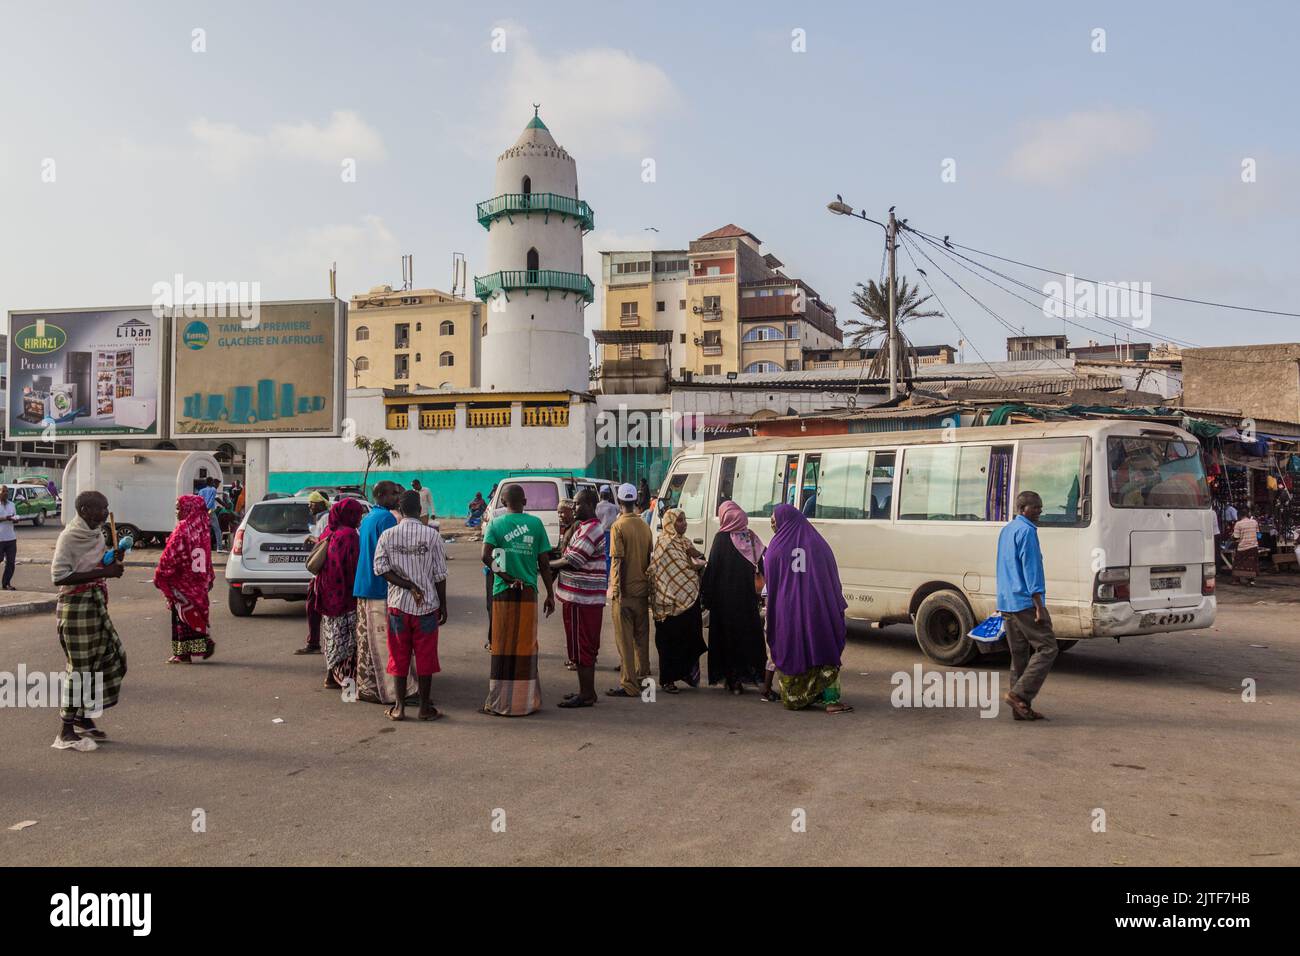 DJIBOUTI, DJIBOUTI - APRIL 17, 2019: People in front of Hamoudi Mosque in Djibouti, capital of Djibouti. Stock Photo